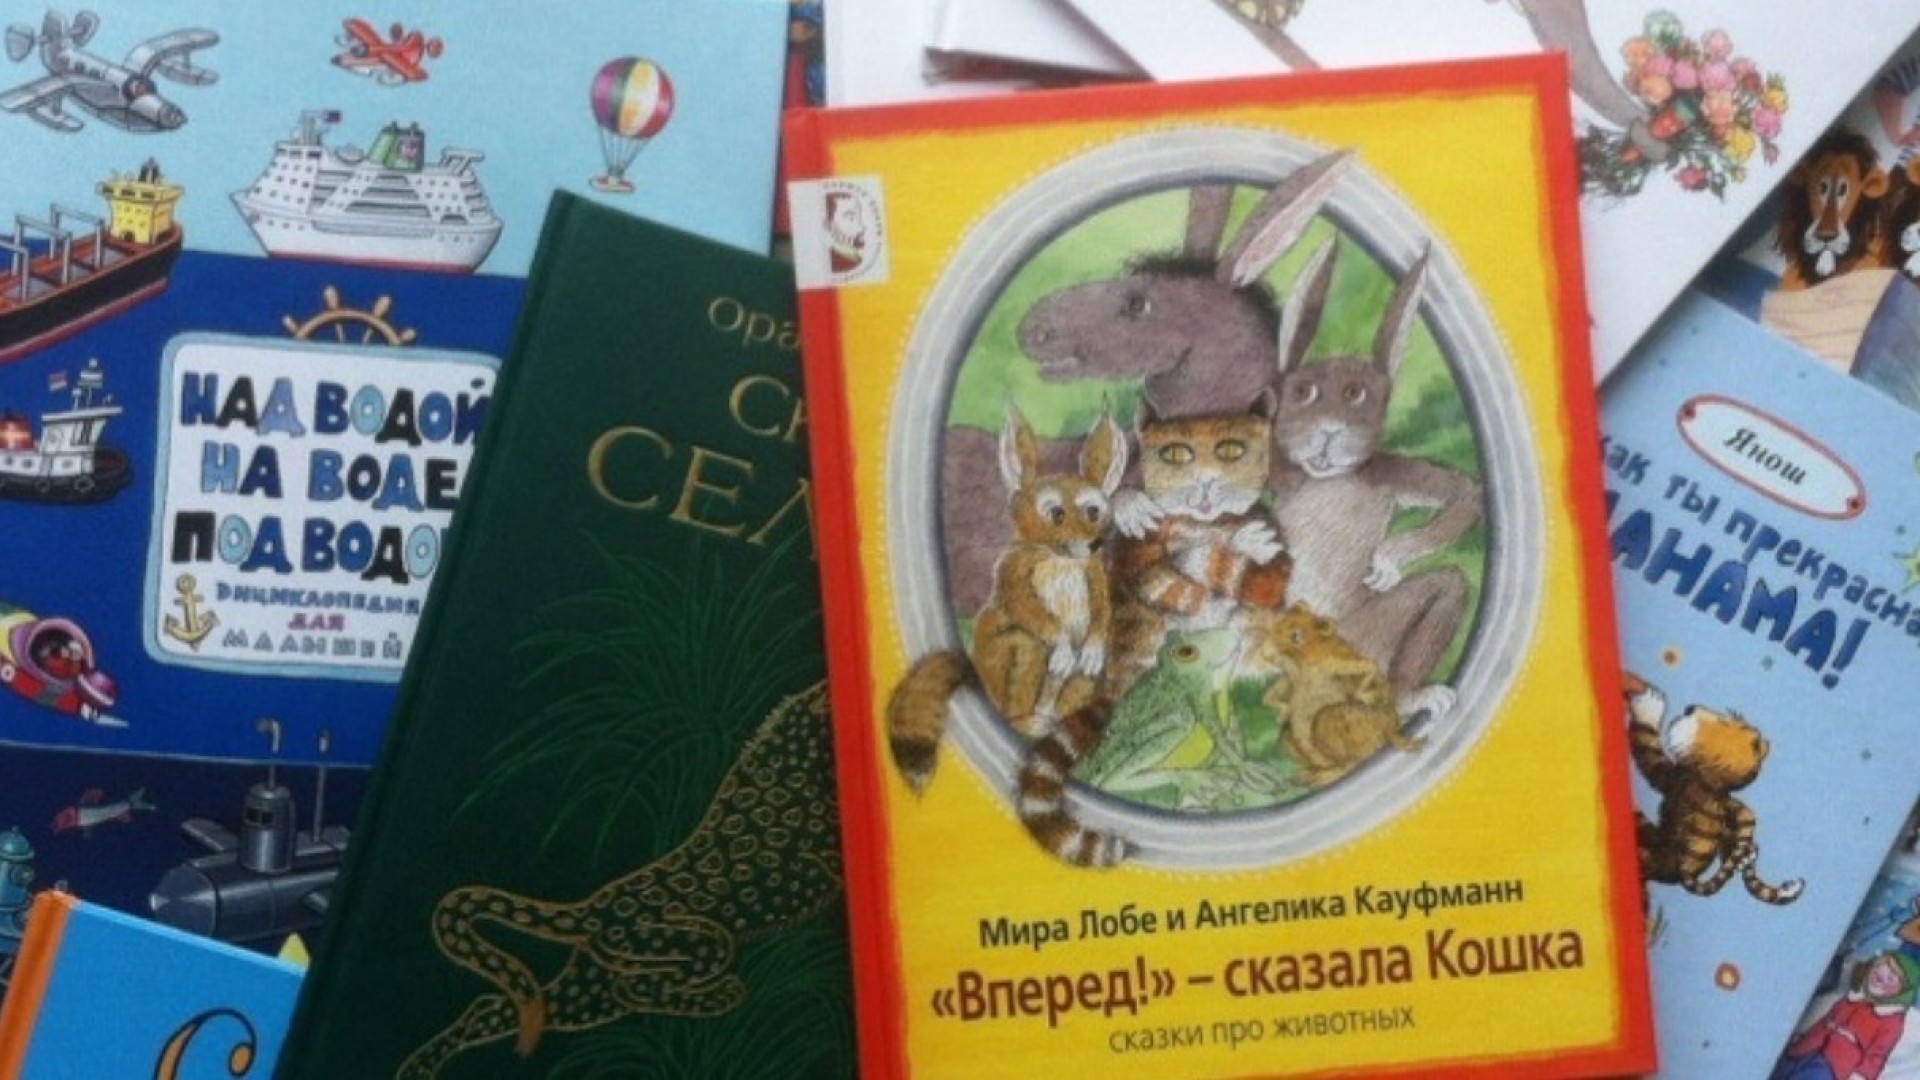 Мария Мелик-Пашаева: «Многие хорошие старые книги, которых было не найти у букинистов, мы уже переиздали!»